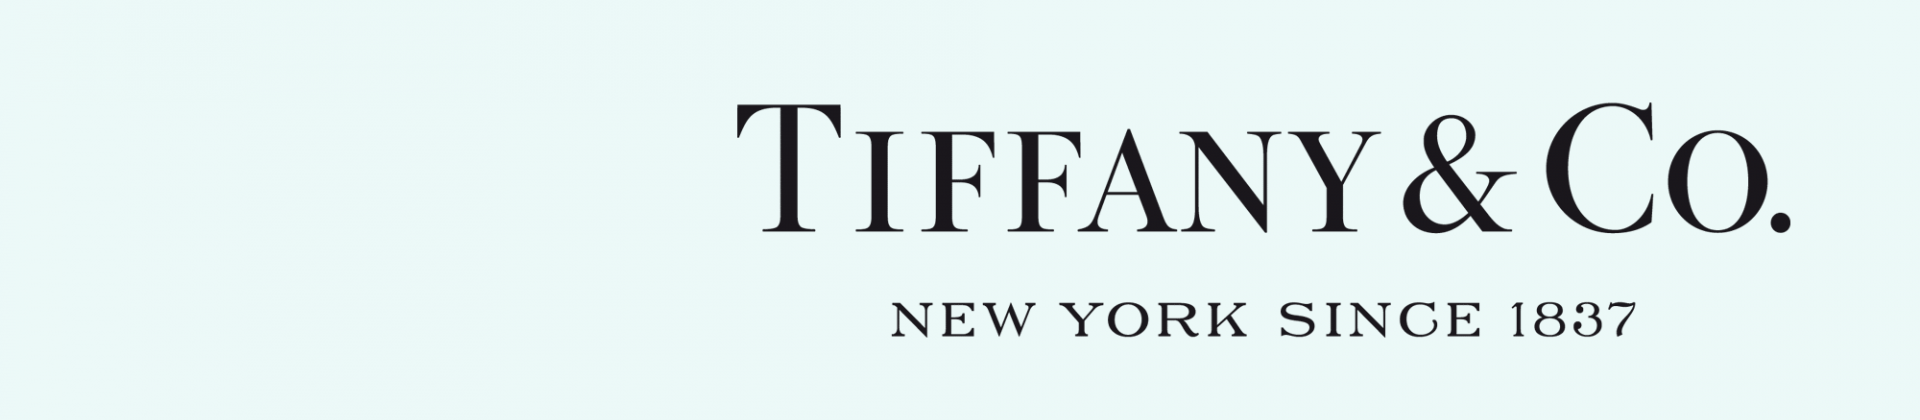 Tiffany's Logo - Tiffany and co Logos